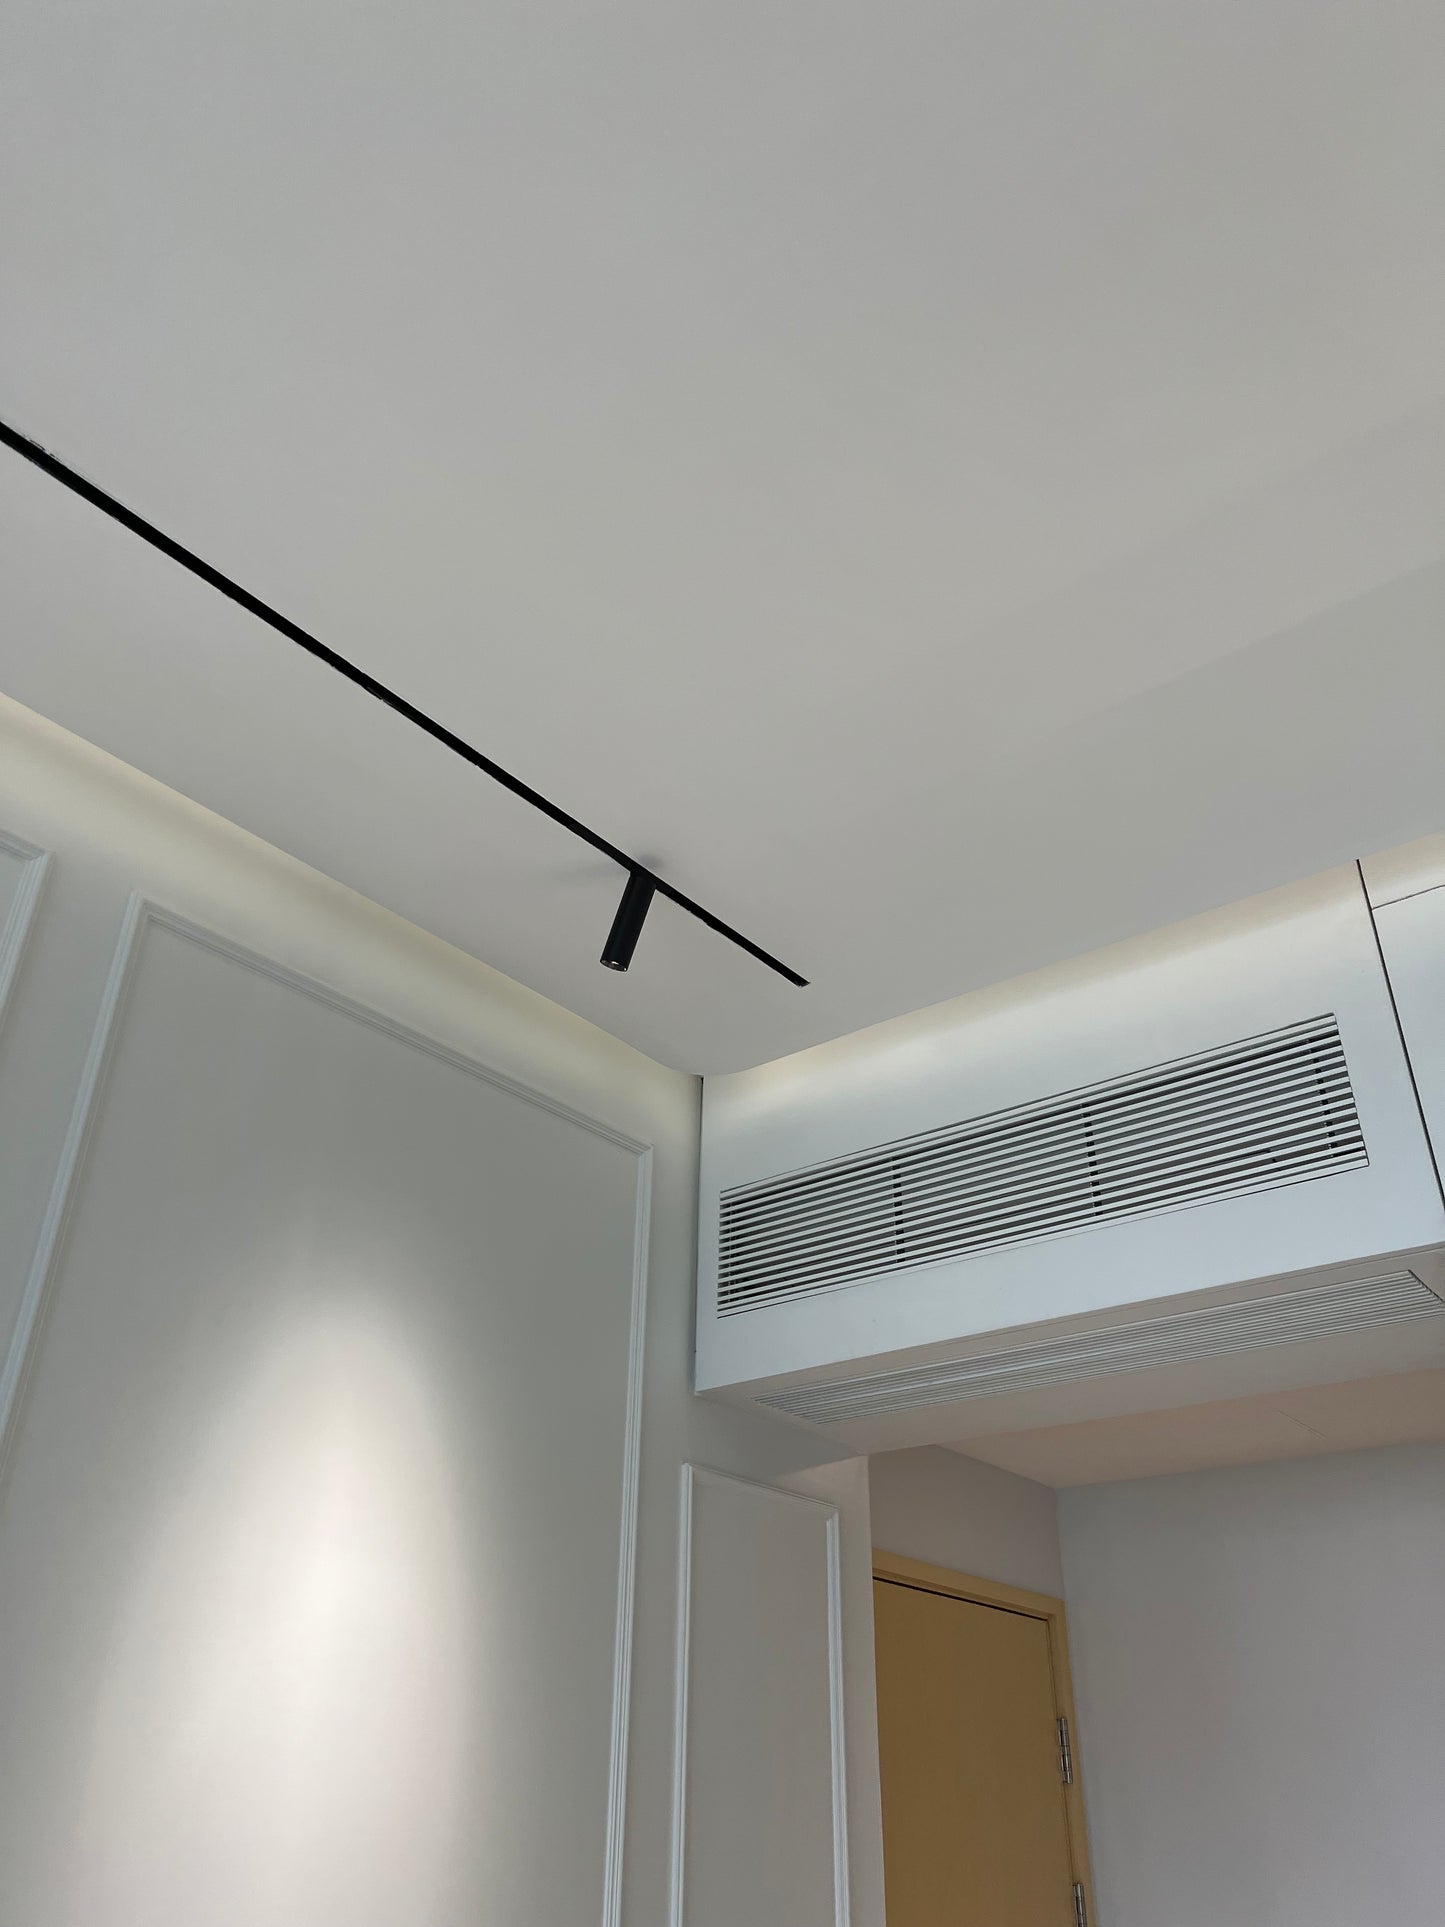 房間的天花板是白色的，配備的是裕利工程品牌的黑色空調。